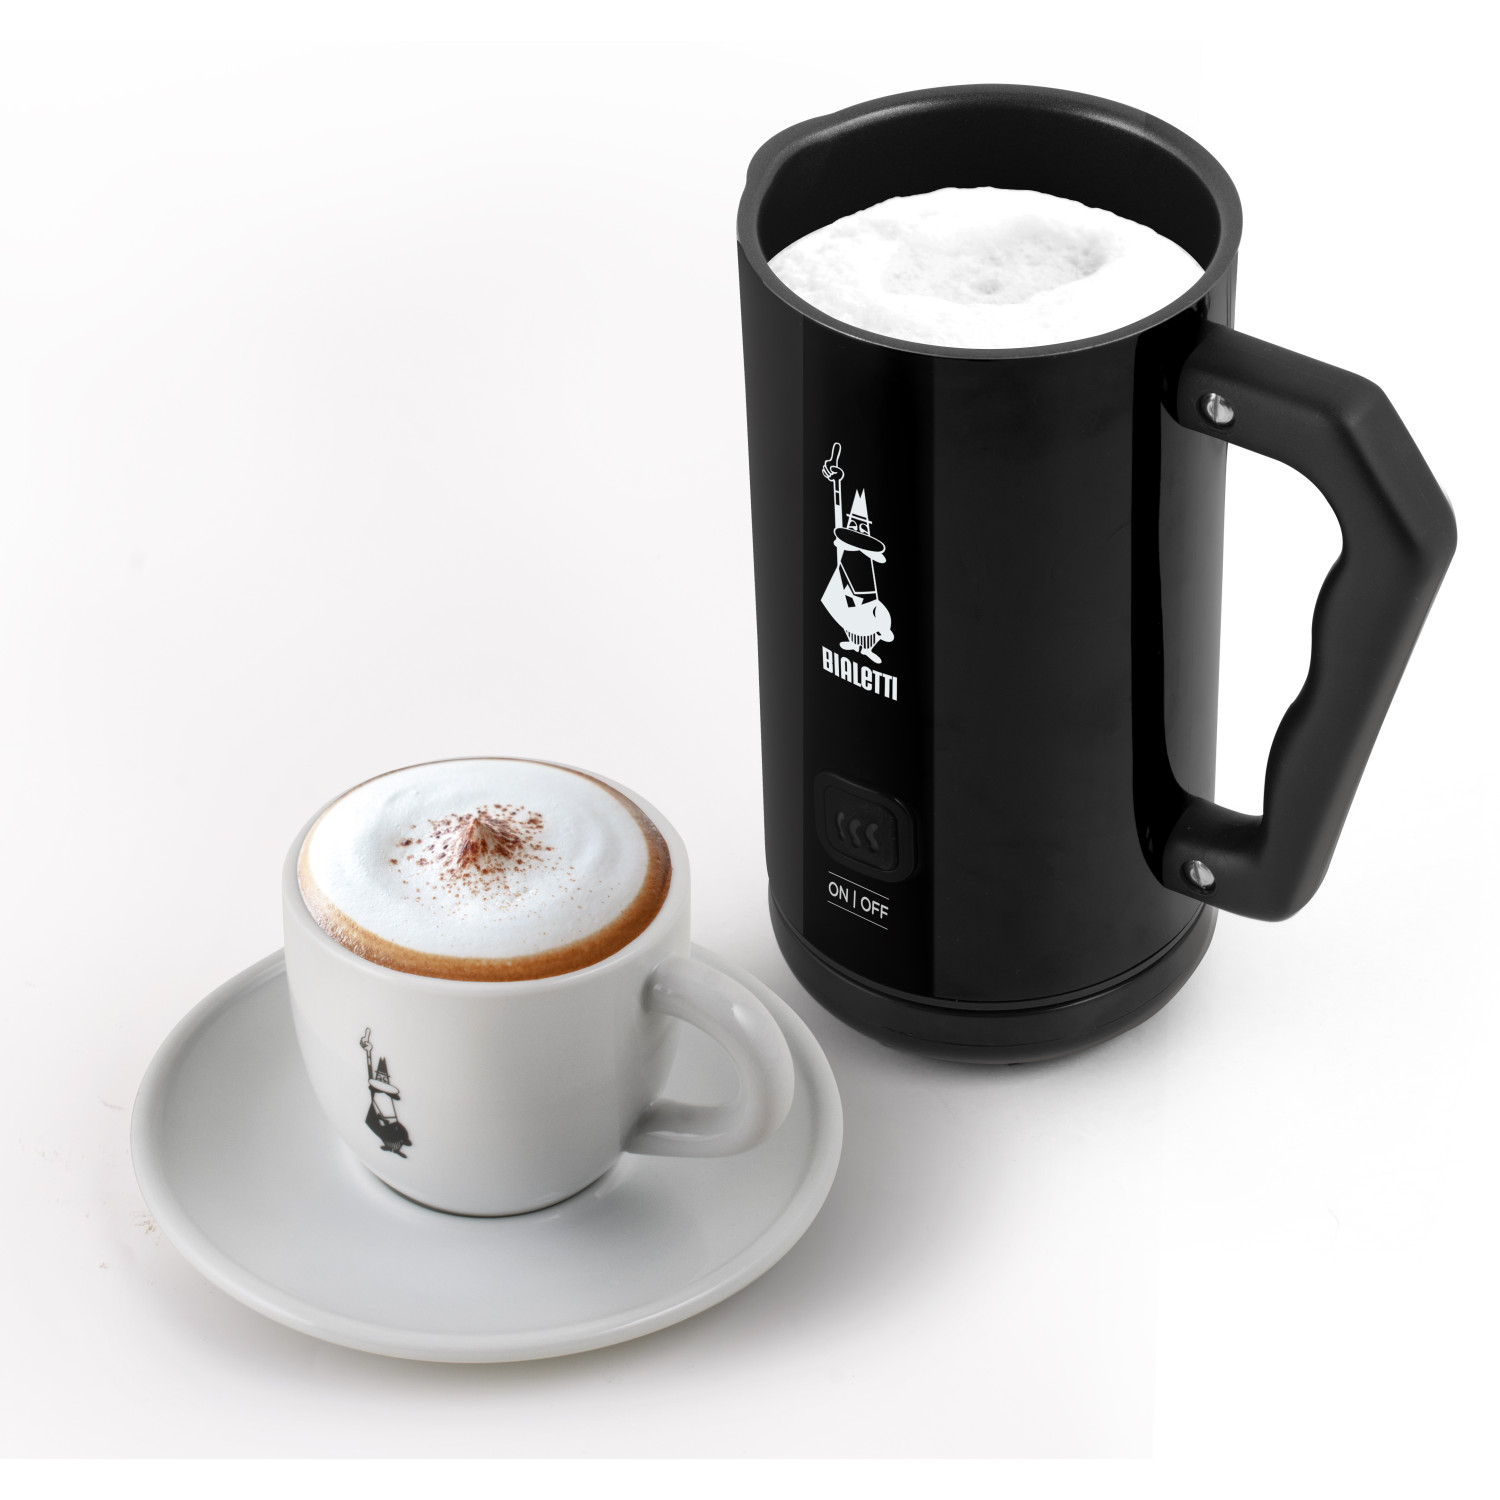 Schwarz BIALETTI Elettric Frother Milk Espressokocher MK02